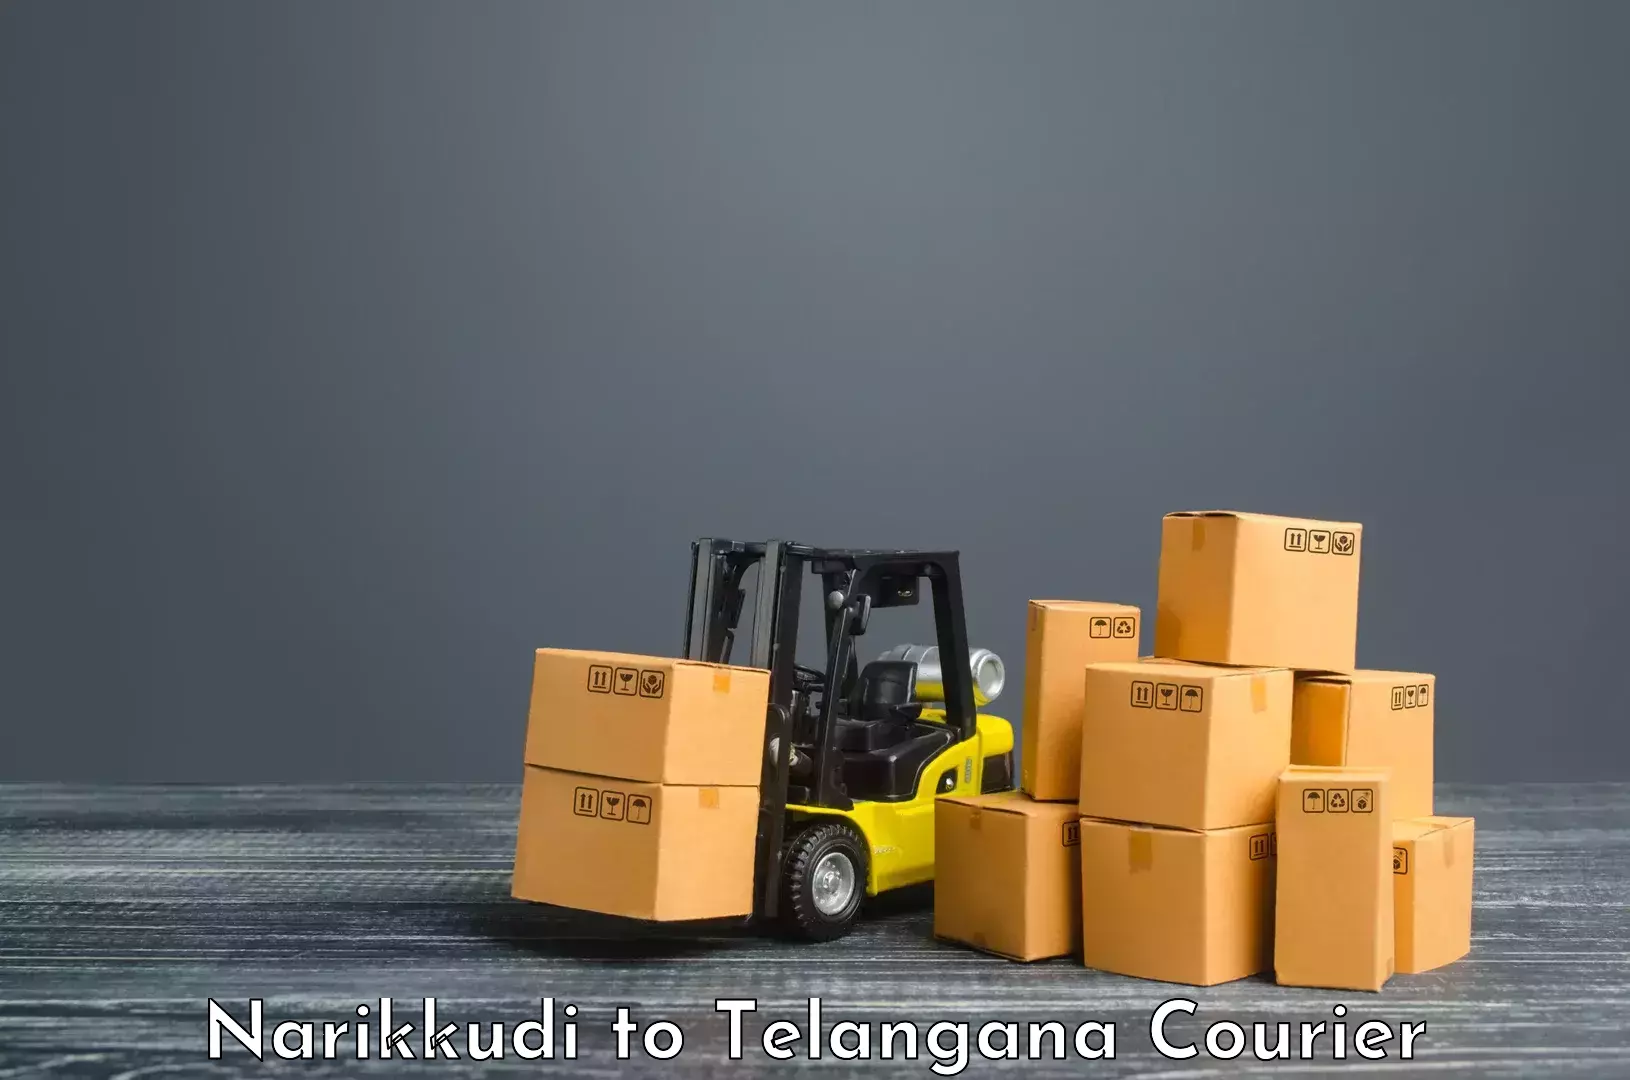 Flexible parcel services Narikkudi to IIT Hyderabad